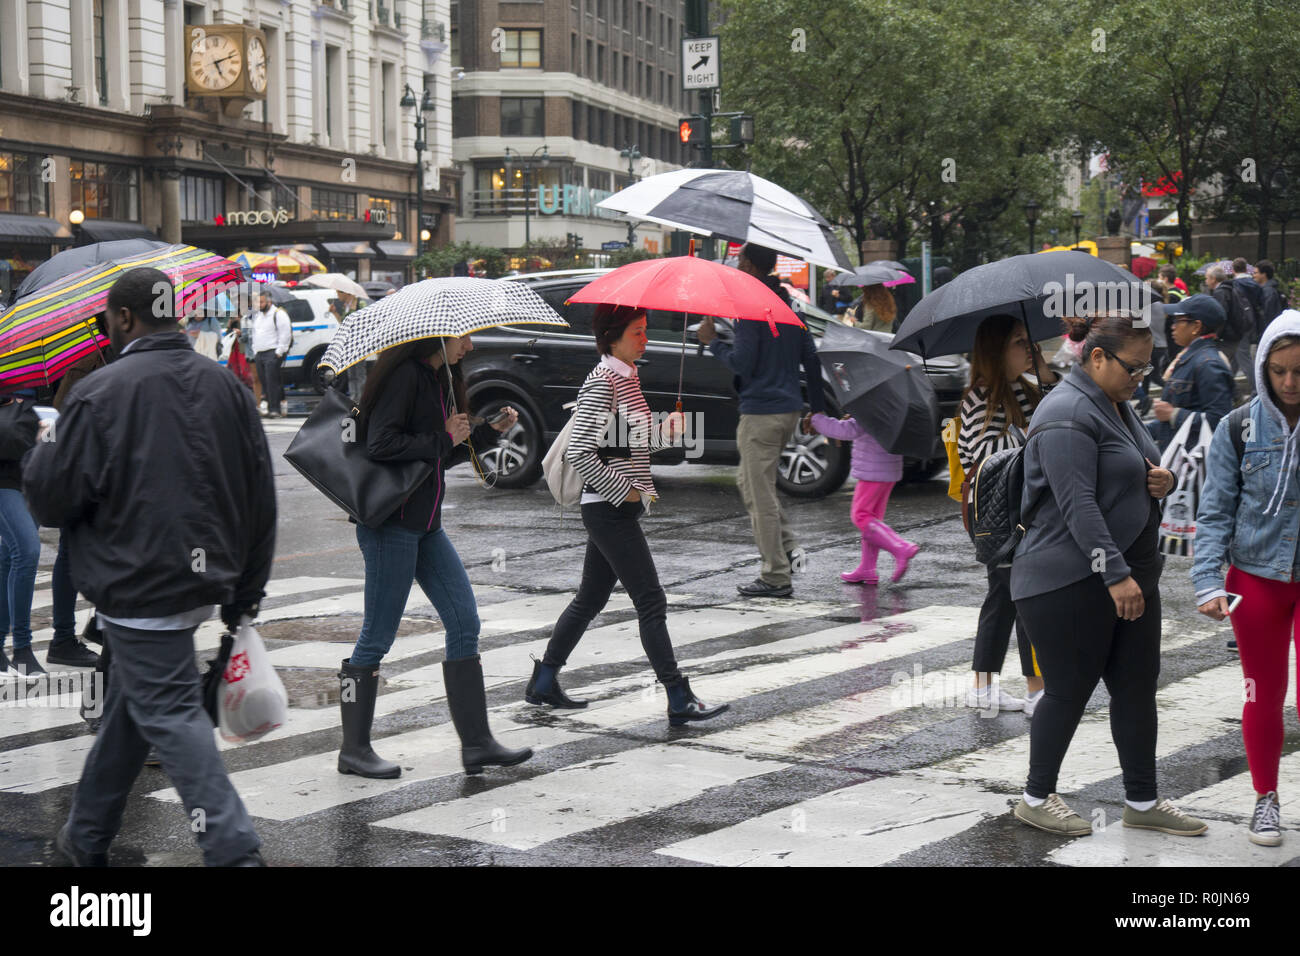 Fußgänger mit Sonnenschirmen, an einem regnerischen Tag in der Nähe von Macy's Kaufhaus an der 34th St. & Broadway in New York City. Stockfoto